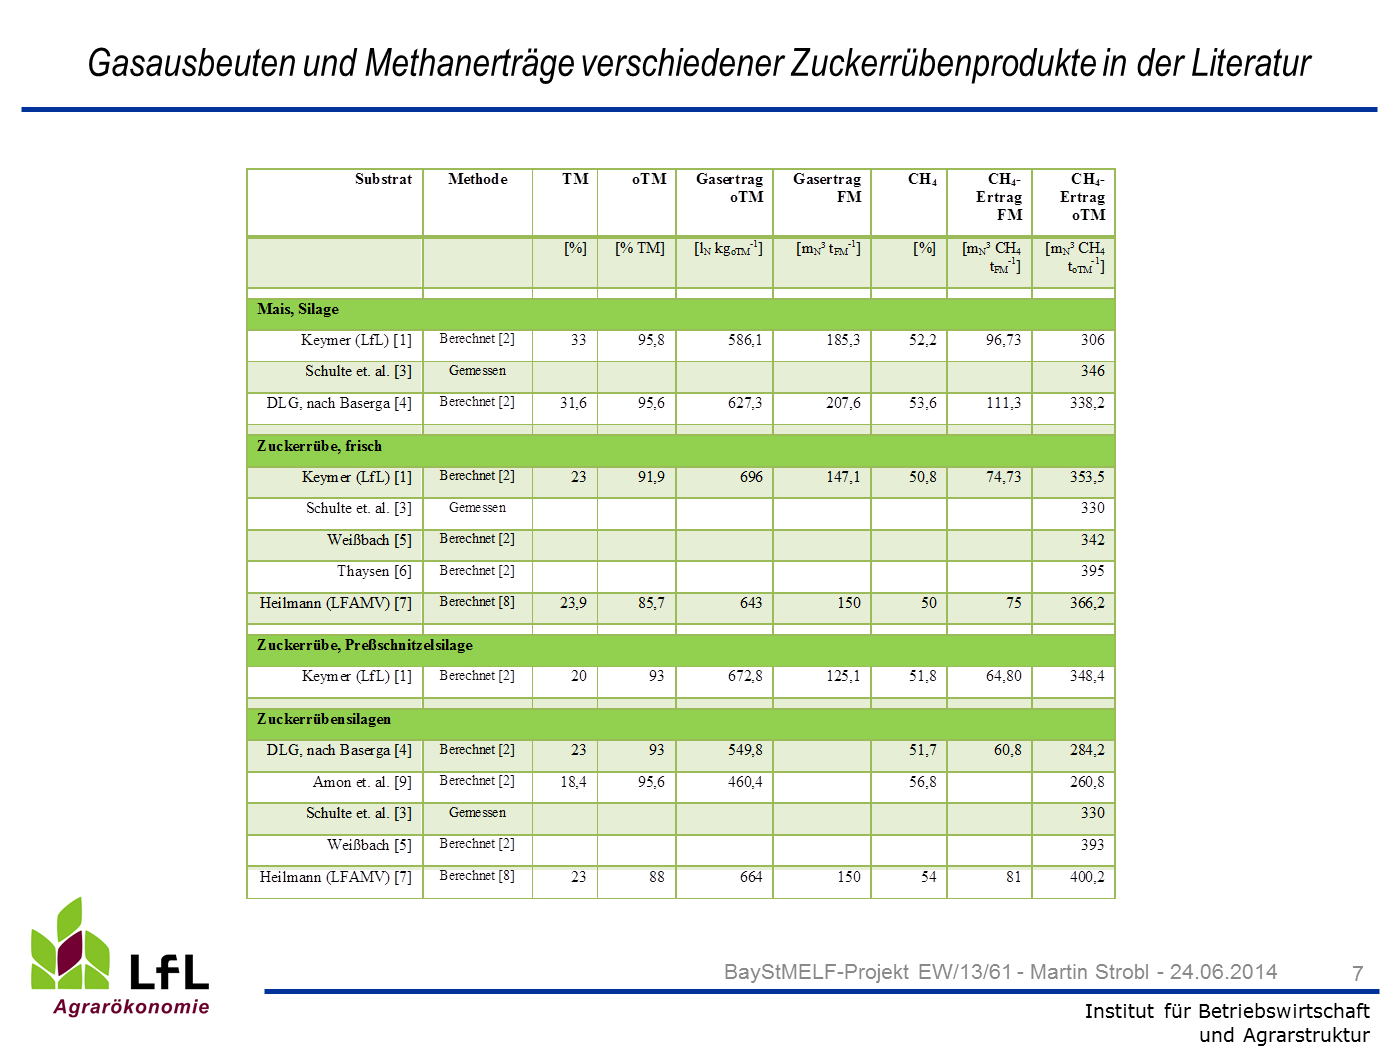 Folie 7: Gasausbeuten und Methanerträge verschiedener Zuckerrübenprodukte in der Literatur Methanertrag: Quelle(n): [1] Keymer, U. (2014): LfL-Gasausbeutendatenbank. http://www.lfl.bayern.